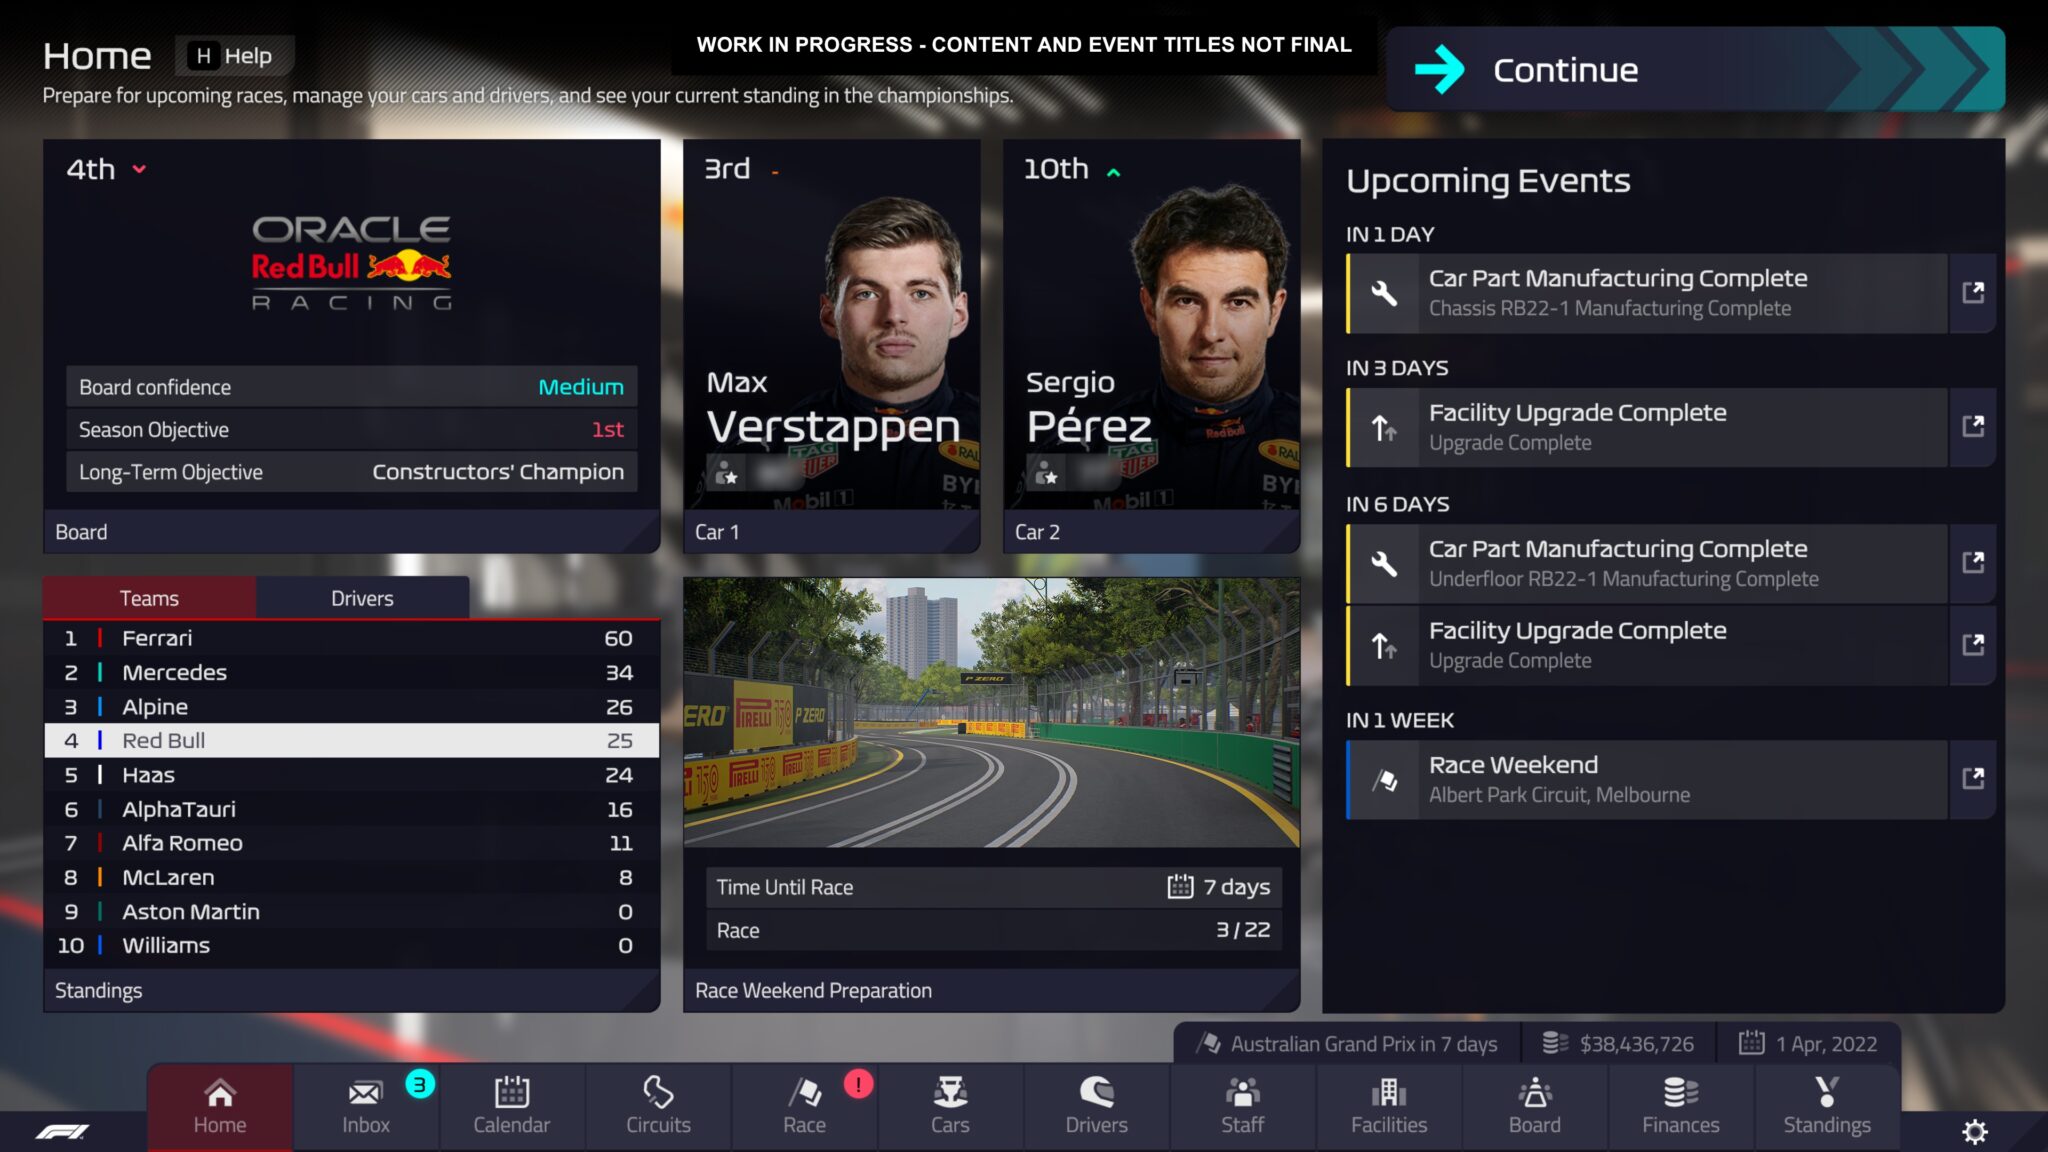 F1 Manager 2022 oferuje dobrze zorganizowany interfejs z autentycznym wyglądem Formuły 1.